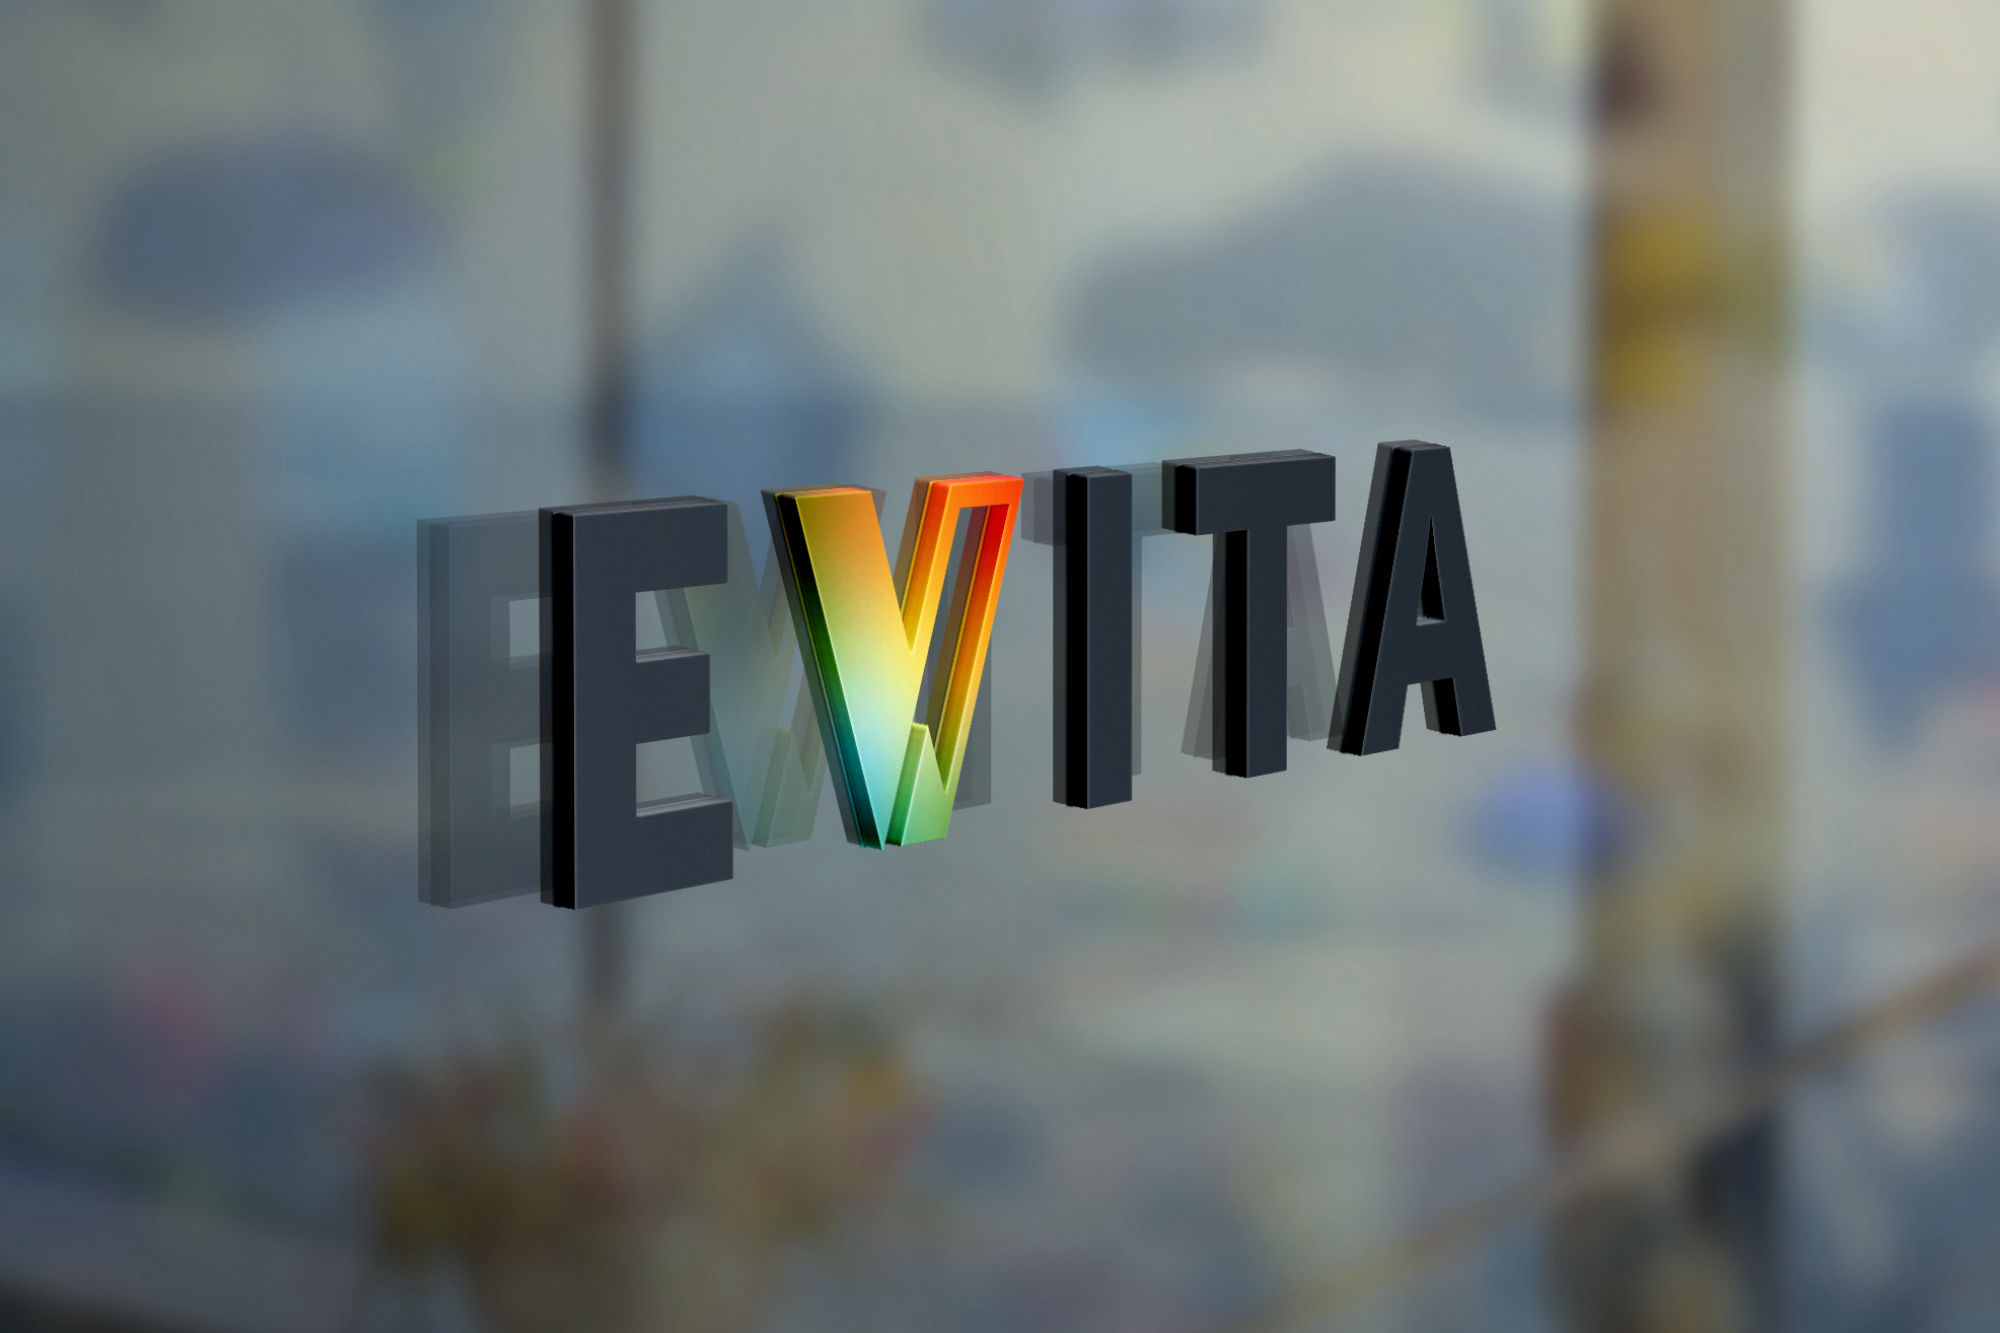 E-VITA GmbH – Technologie, die schützt.